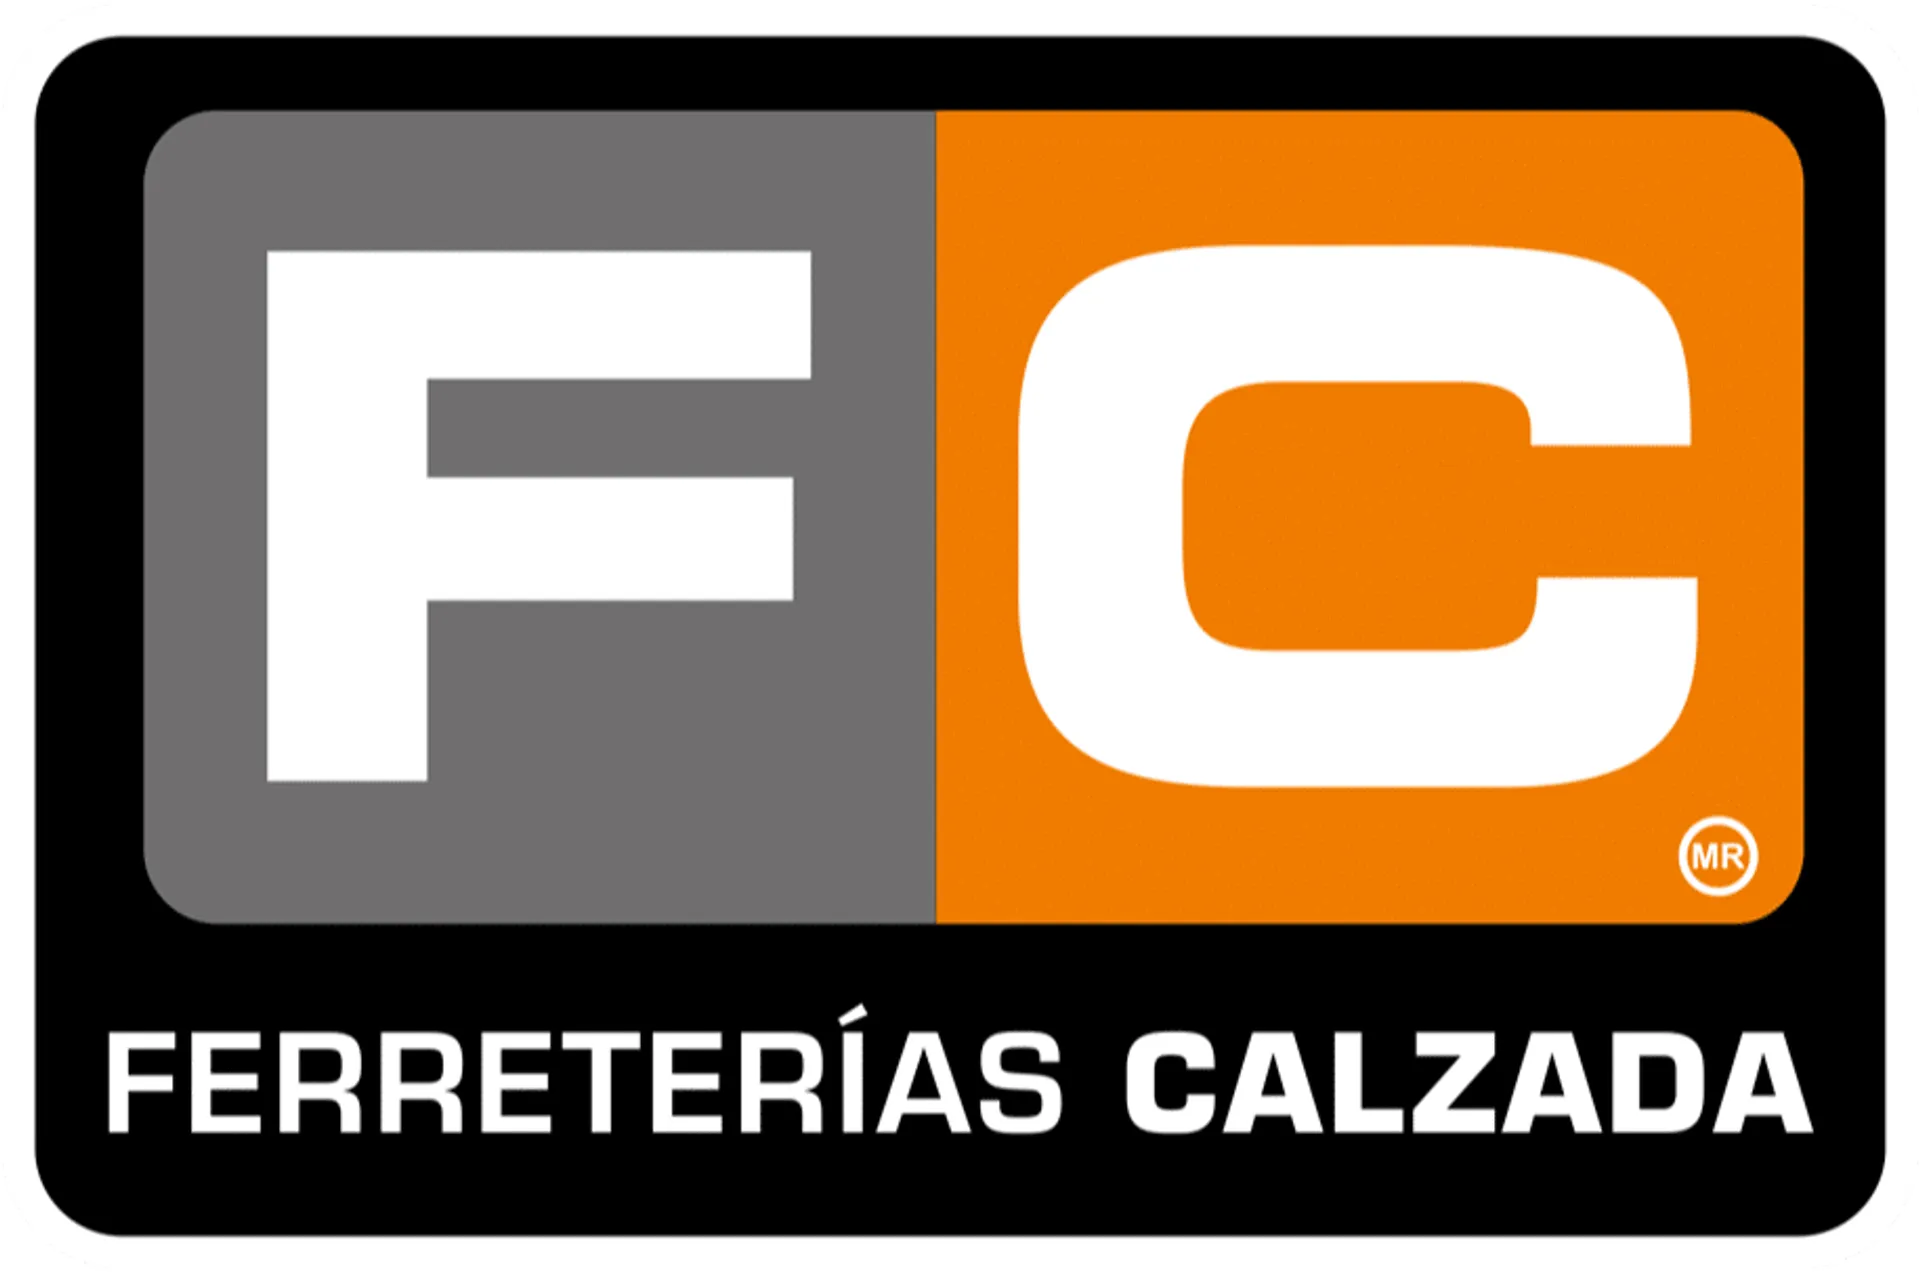 FERRETERIA CALZADA logo